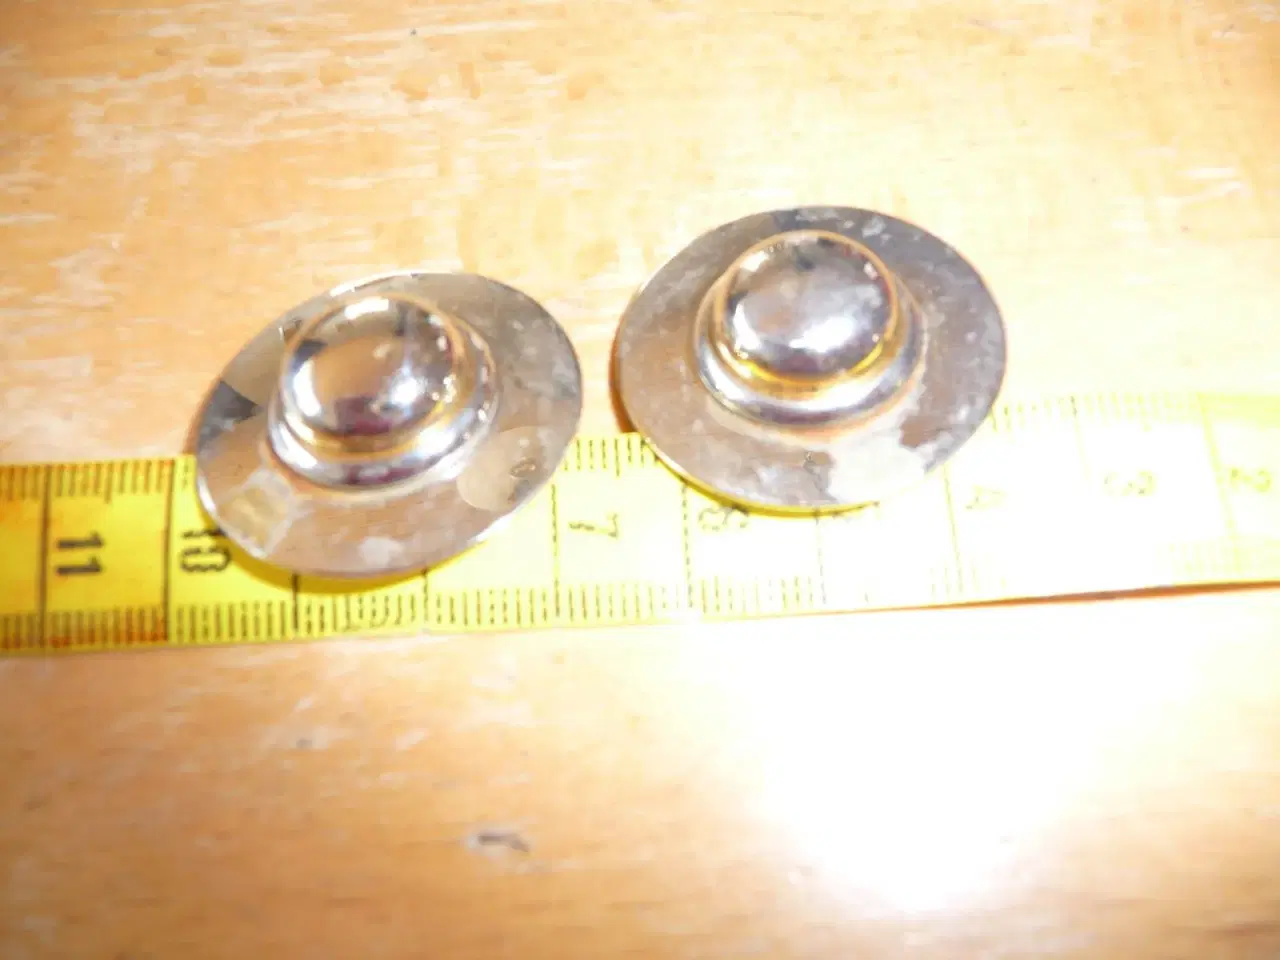 Billede 1 - 2 metal knapper der ligner en hat